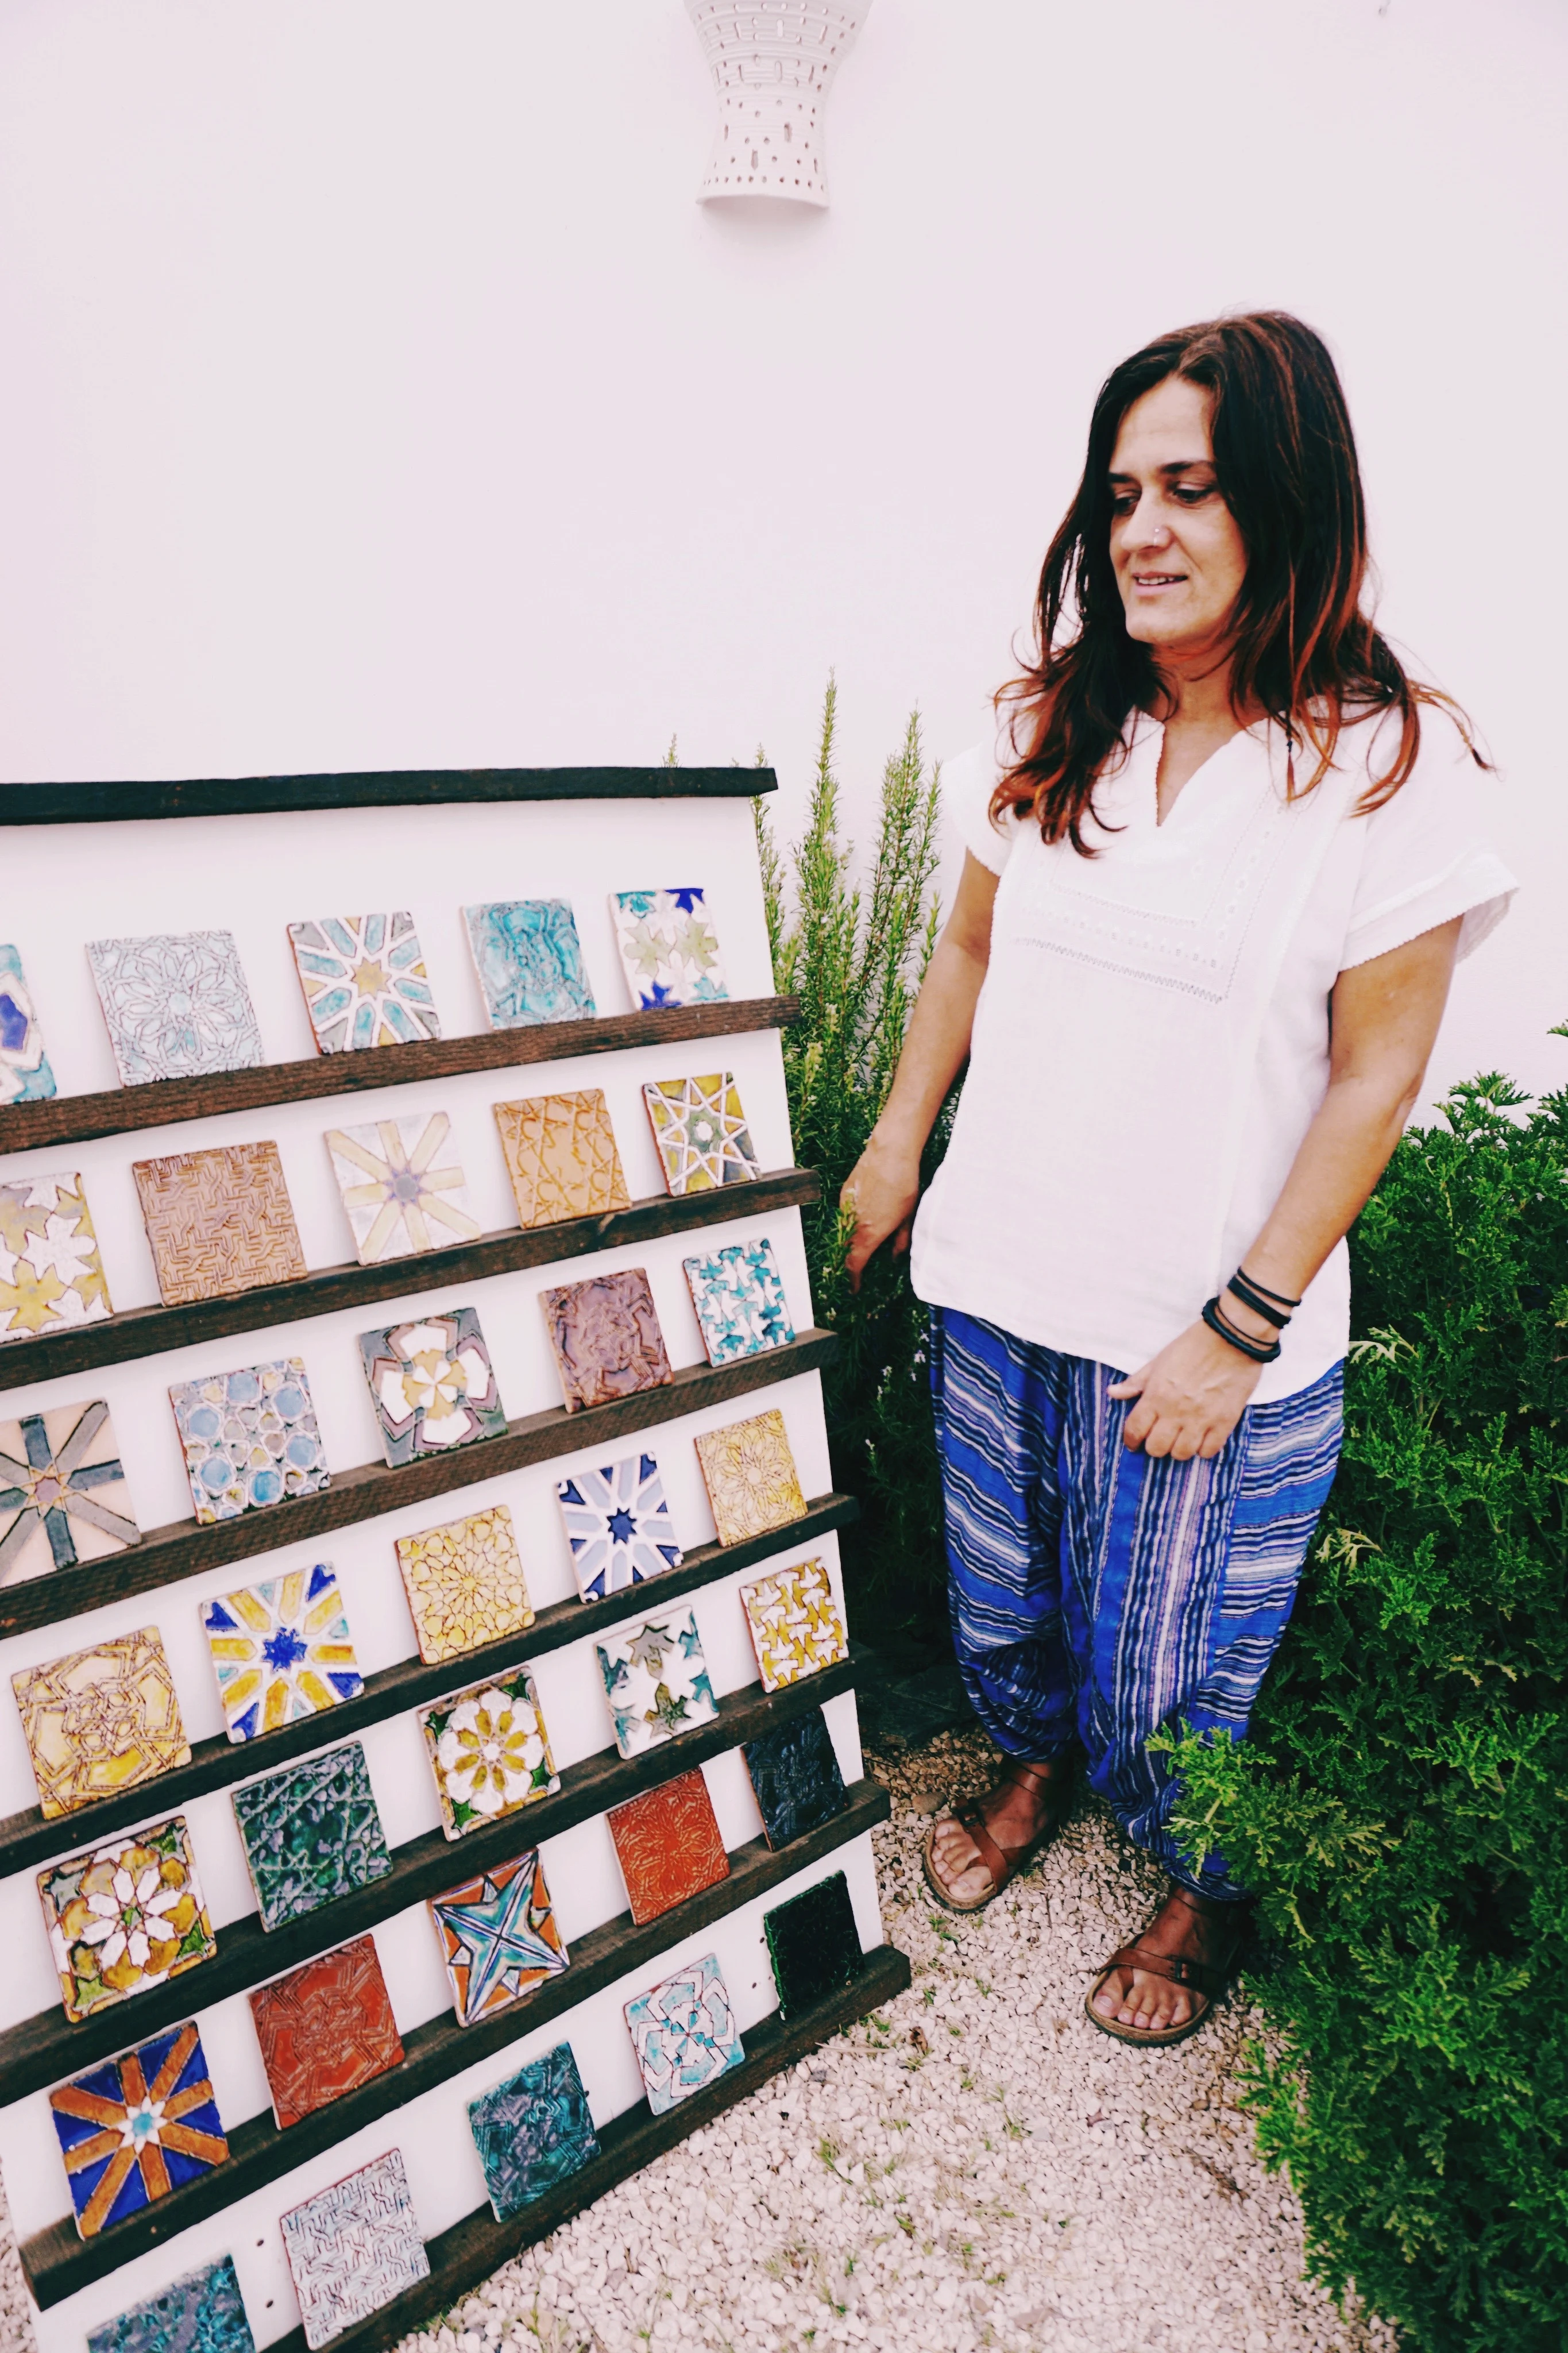 Rita Silverio Morais ist eine portugiesische Künstlerin mit aufwendig detaillierten Azulejos.